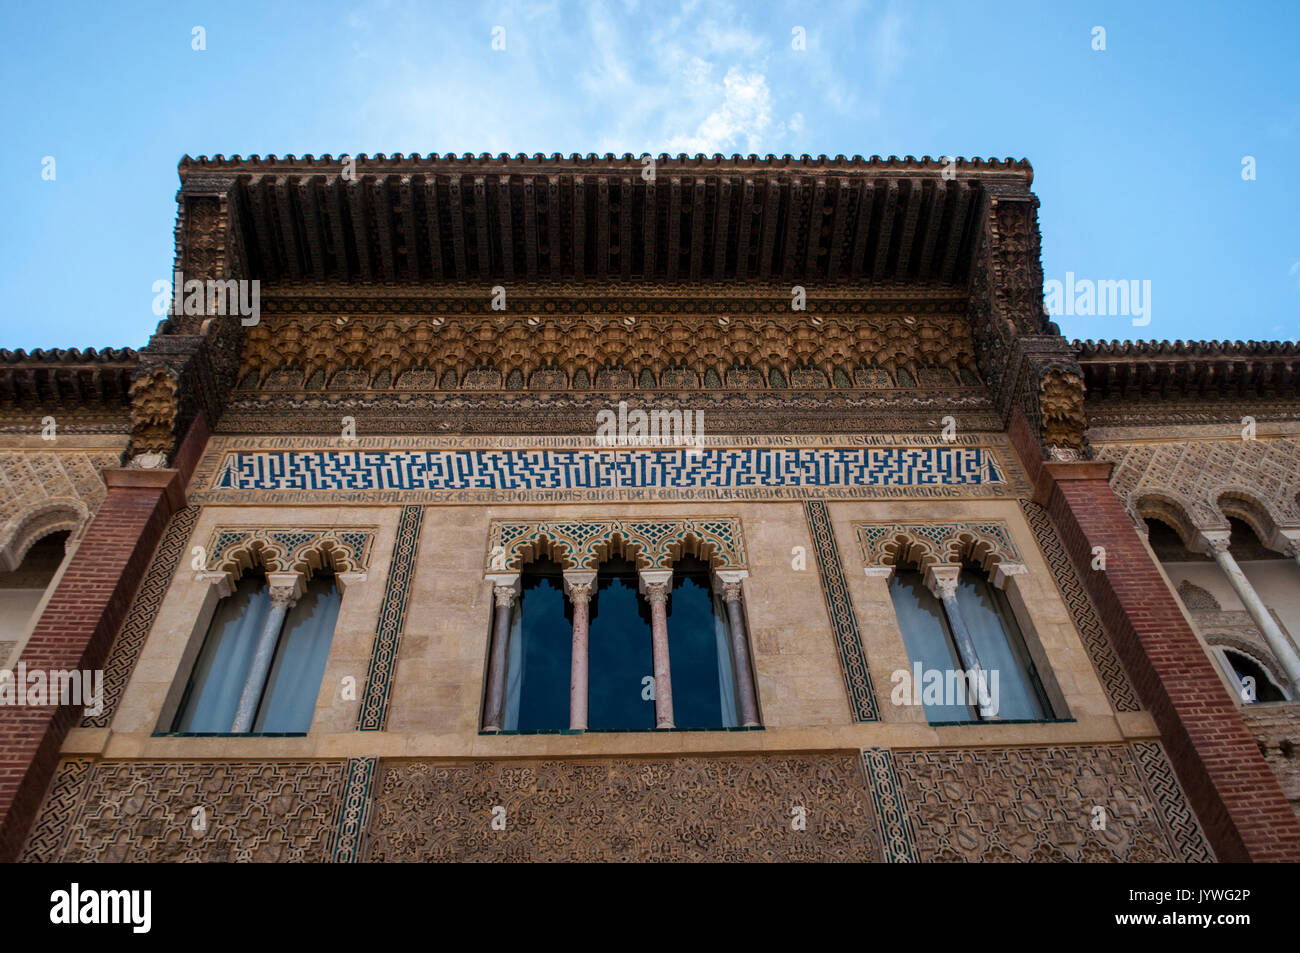 Les fenêtres de la décoration du palais mudéjar de Pedro I, conçu dans le style mauresque pour un chrétien d'une règle, une partie de l'Alcazar de Séville, le palais royal Banque D'Images